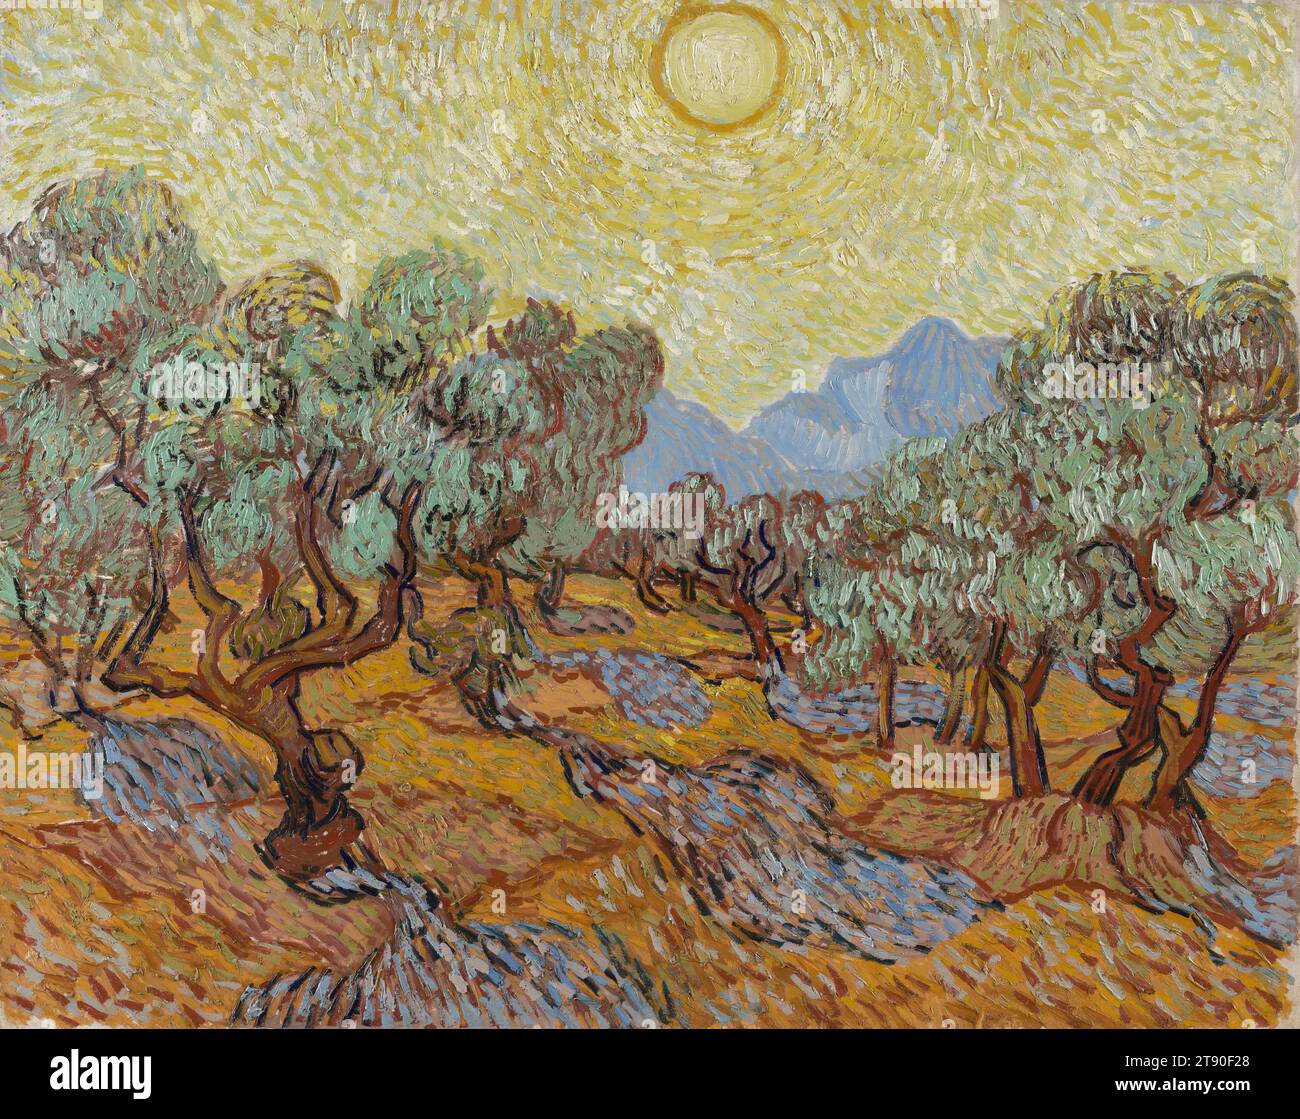 Oliviers, 1889, Vincent van Gogh, Néerlandais, 1853 - 1890, 29 x 36 1/2 po (73,66 x 92,71 cm) (toile)39 3/4 x 47 x 3 1/2 po (100,97 x 119,38 x 8,89 cm) (cadre extérieur)28 1/2 x 36 po (72,39 x 91,44 cm) (vue), huile sur toile, pays-Bas, 19e siècle, c'est l'une des quinze toiles d'oliviers que van Gogh a exécutées entre juin et décembre 1889. Plus tôt cette année-là, il s’était interné à l’asile de St-Paul, dans la ville de St-Rémy, dans le sud de la France, où il créerait ses œuvres les plus profondes. Les oranges et les jaunes vibrants suggèrent que l'image date des mois d'automne Banque D'Images